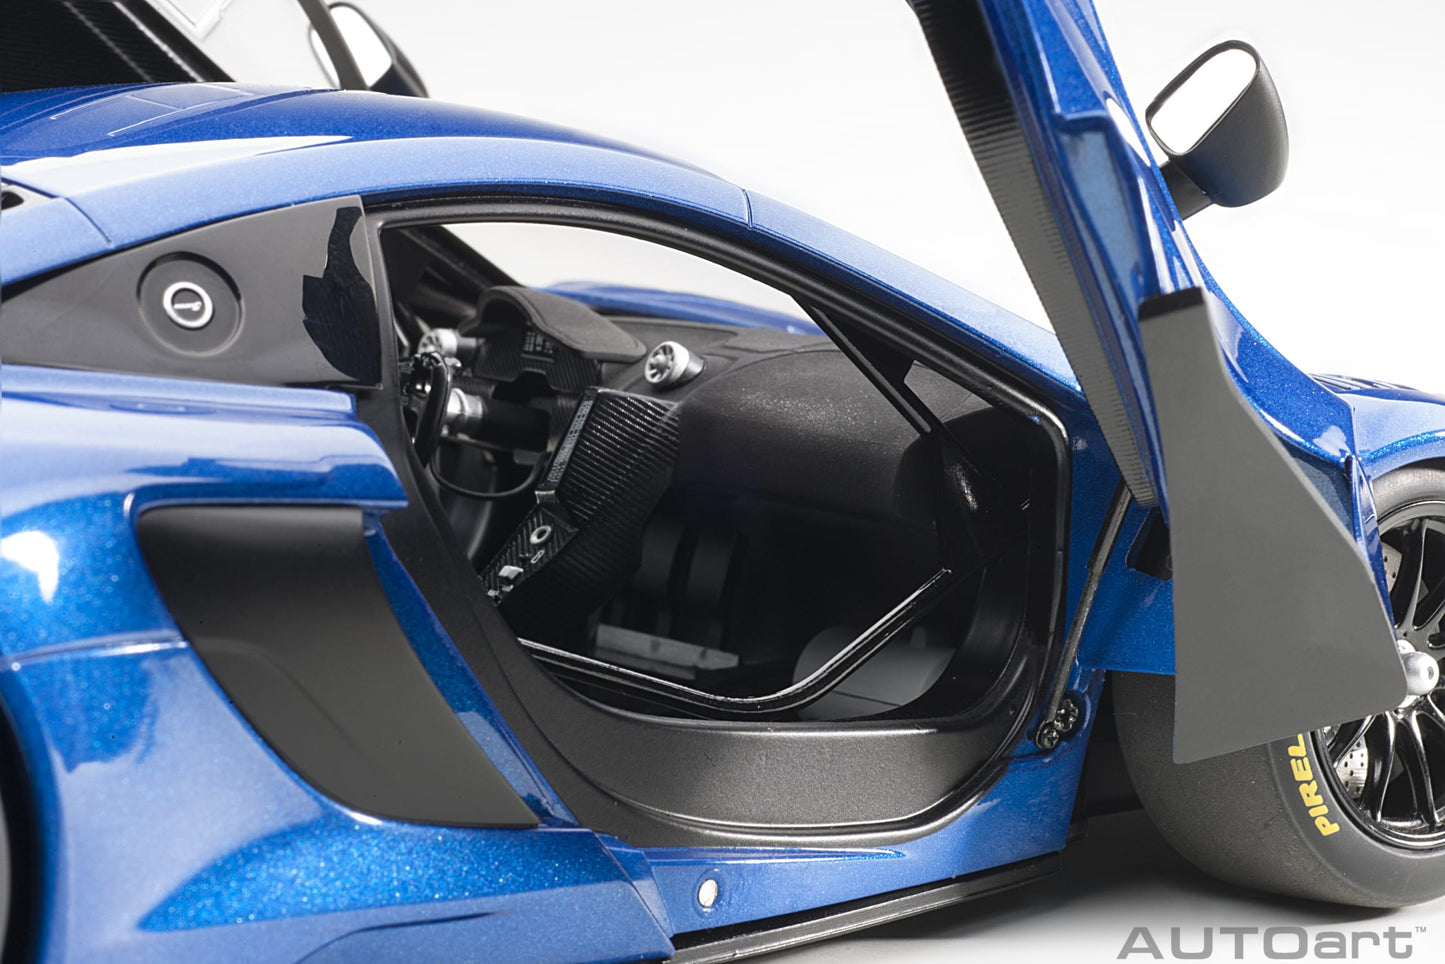 AUTOart 1:18 McLaren 650S GT3 Plain Body Version (Blue Metallic) 81641